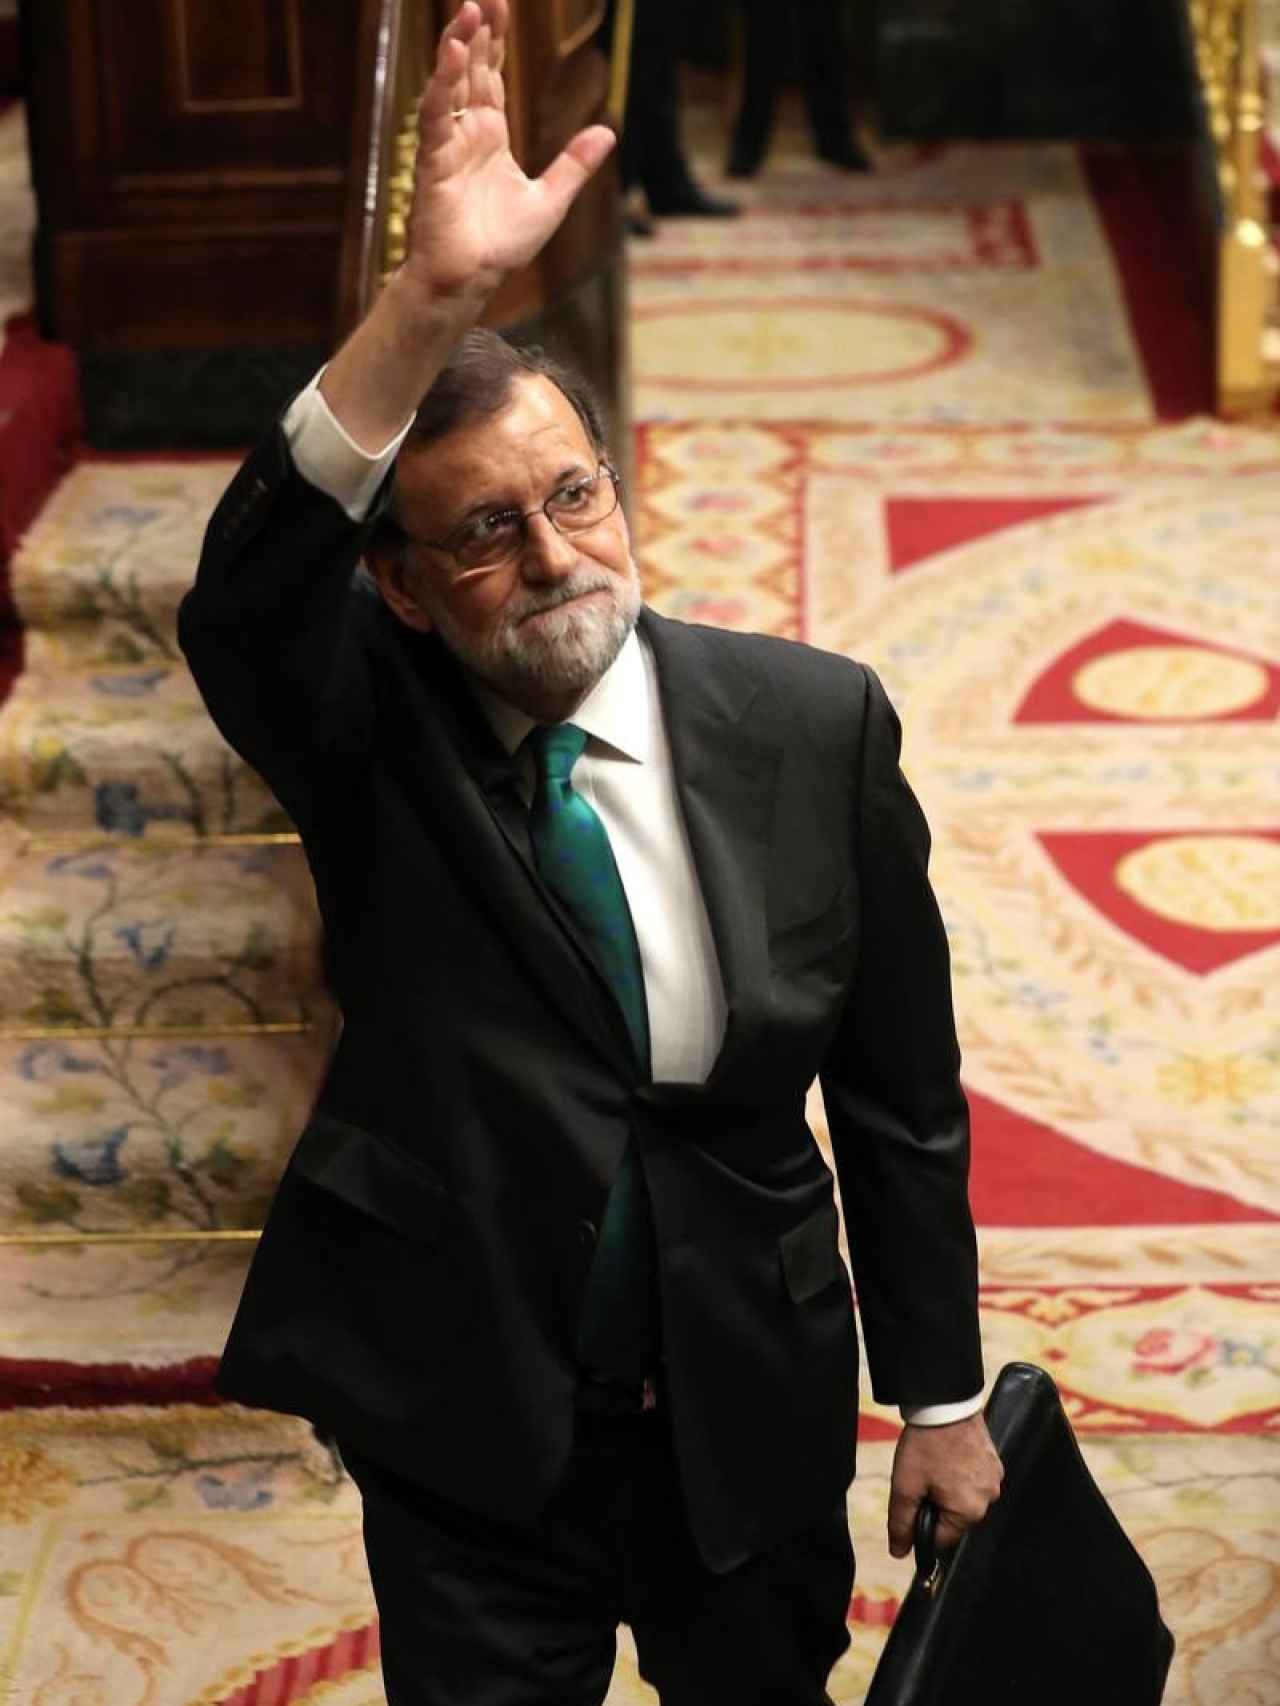 Mariano Rajoy despidiéndose en el Congreso durante la moción de censura.